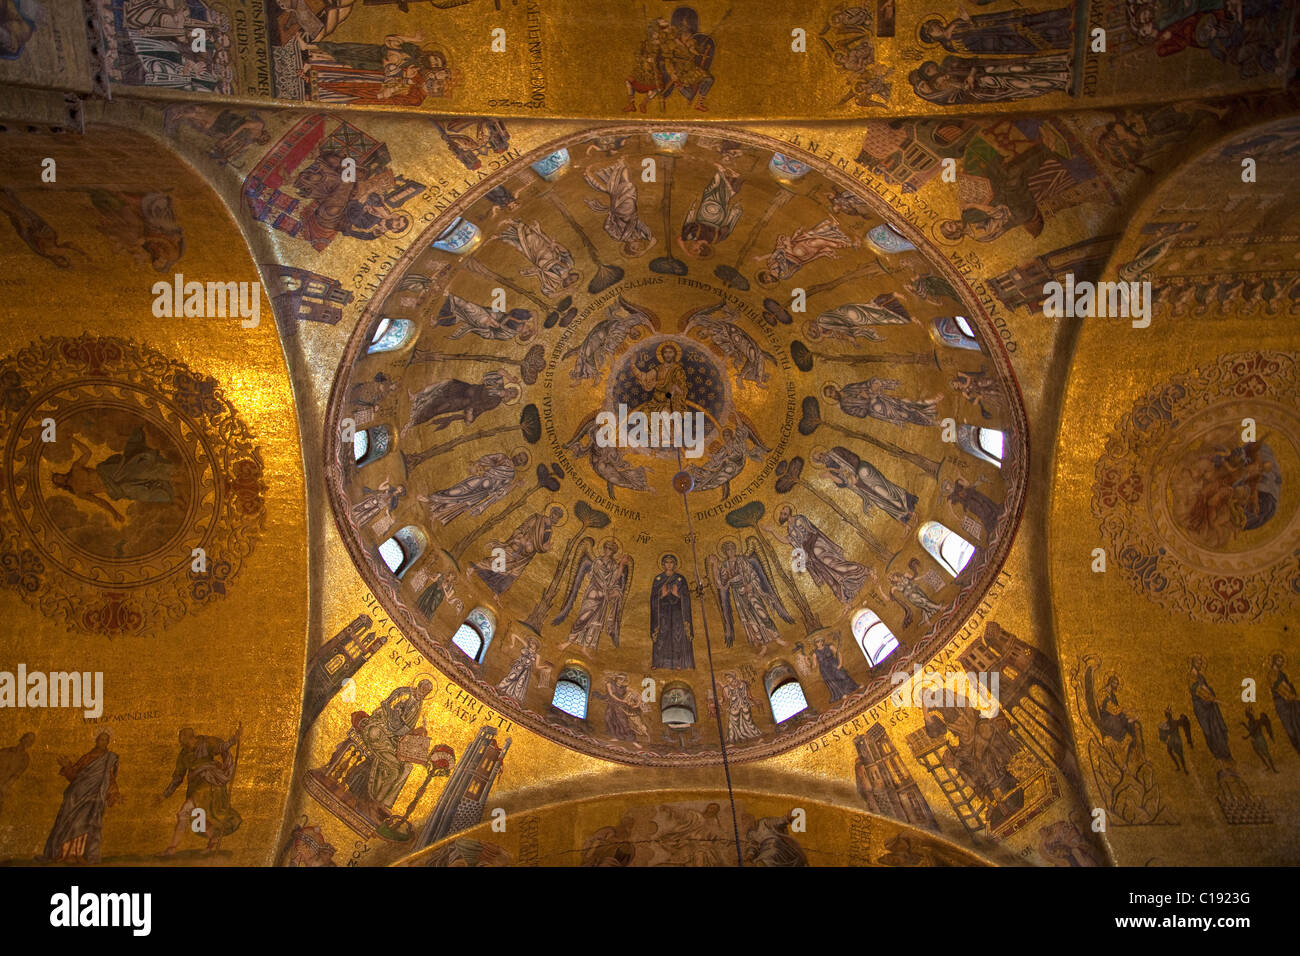 Ascensione Duomo del XIII secolo d'oro illuminato bizantina mosaici di San Marco la Basilica di San Marco, interno, Venezia, Veneto Foto Stock